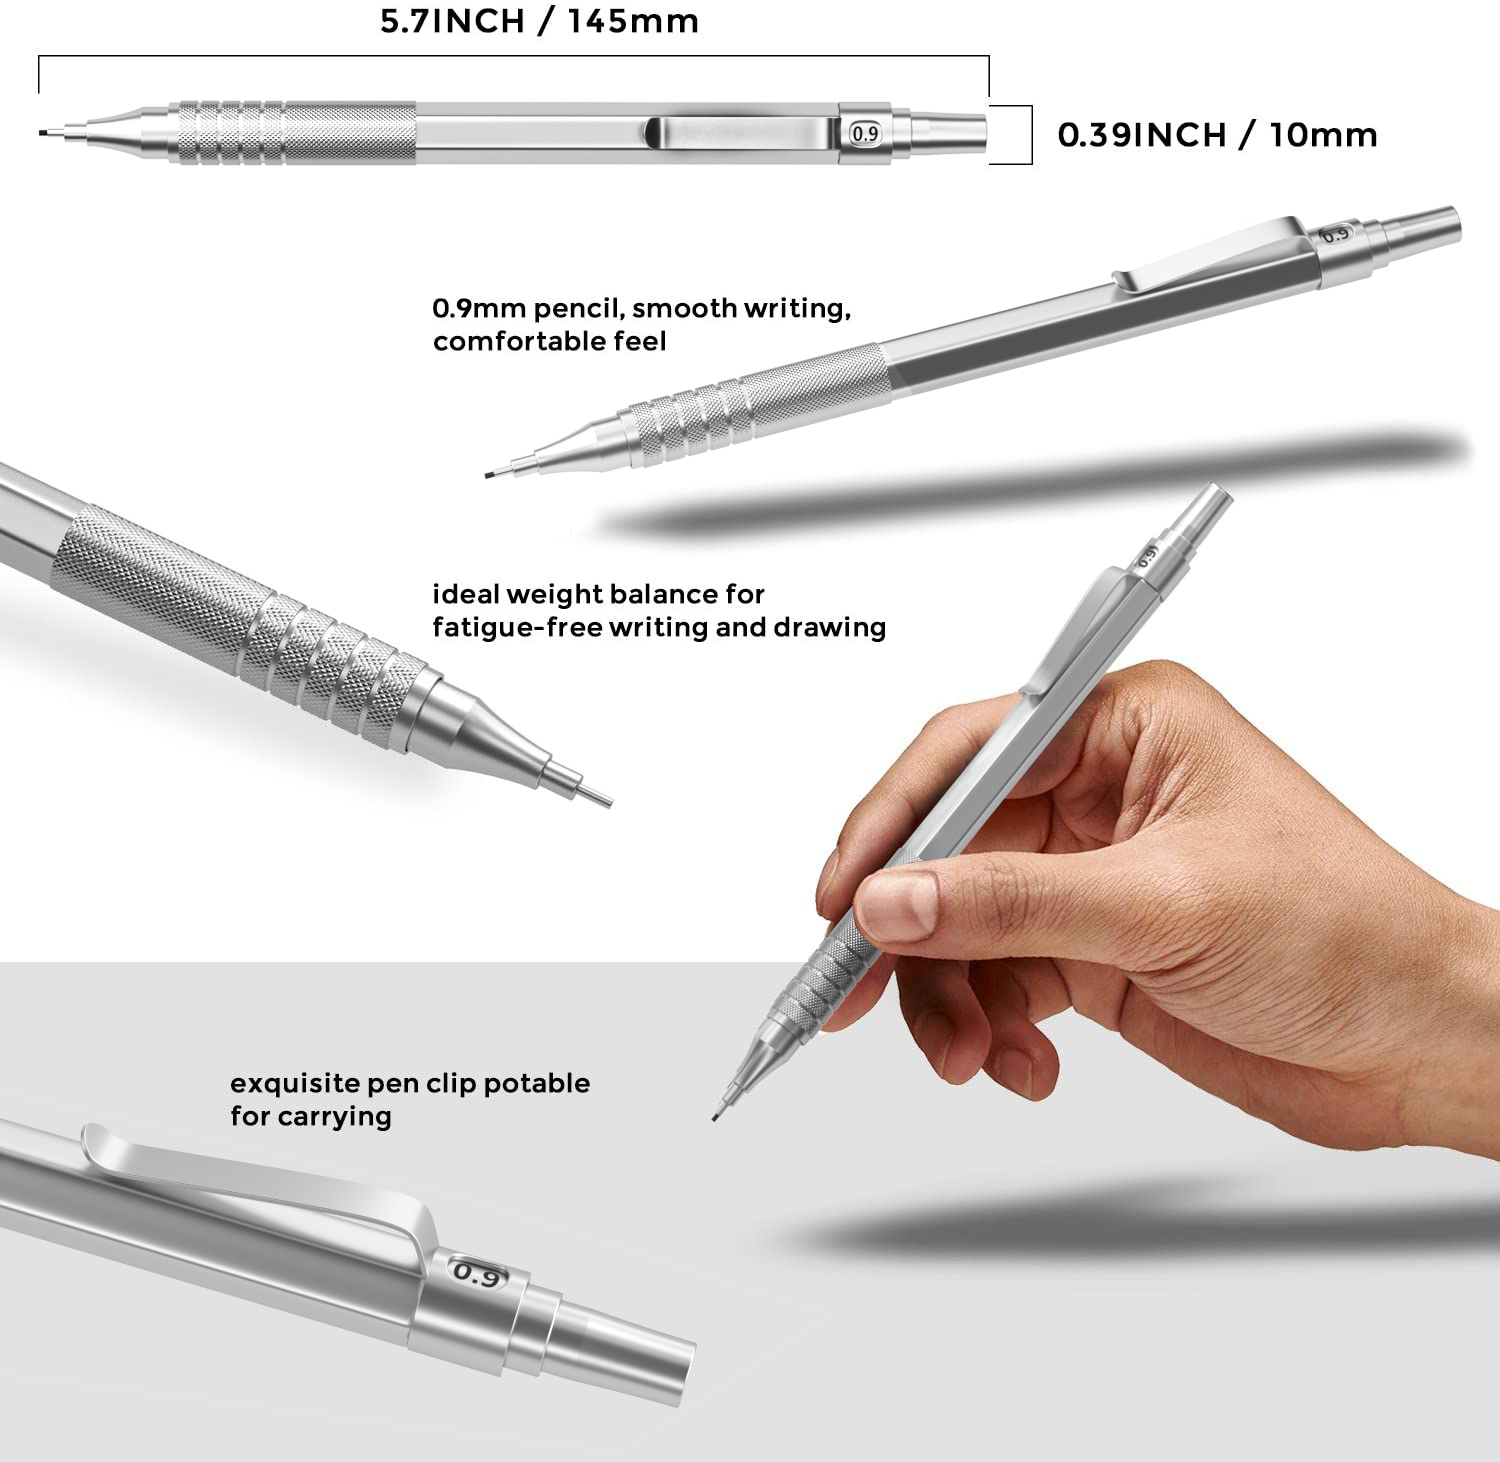 Nicpro 6 PCS 0.5 mm Mechanical Pencil Set, Color Pencil Clips Design D